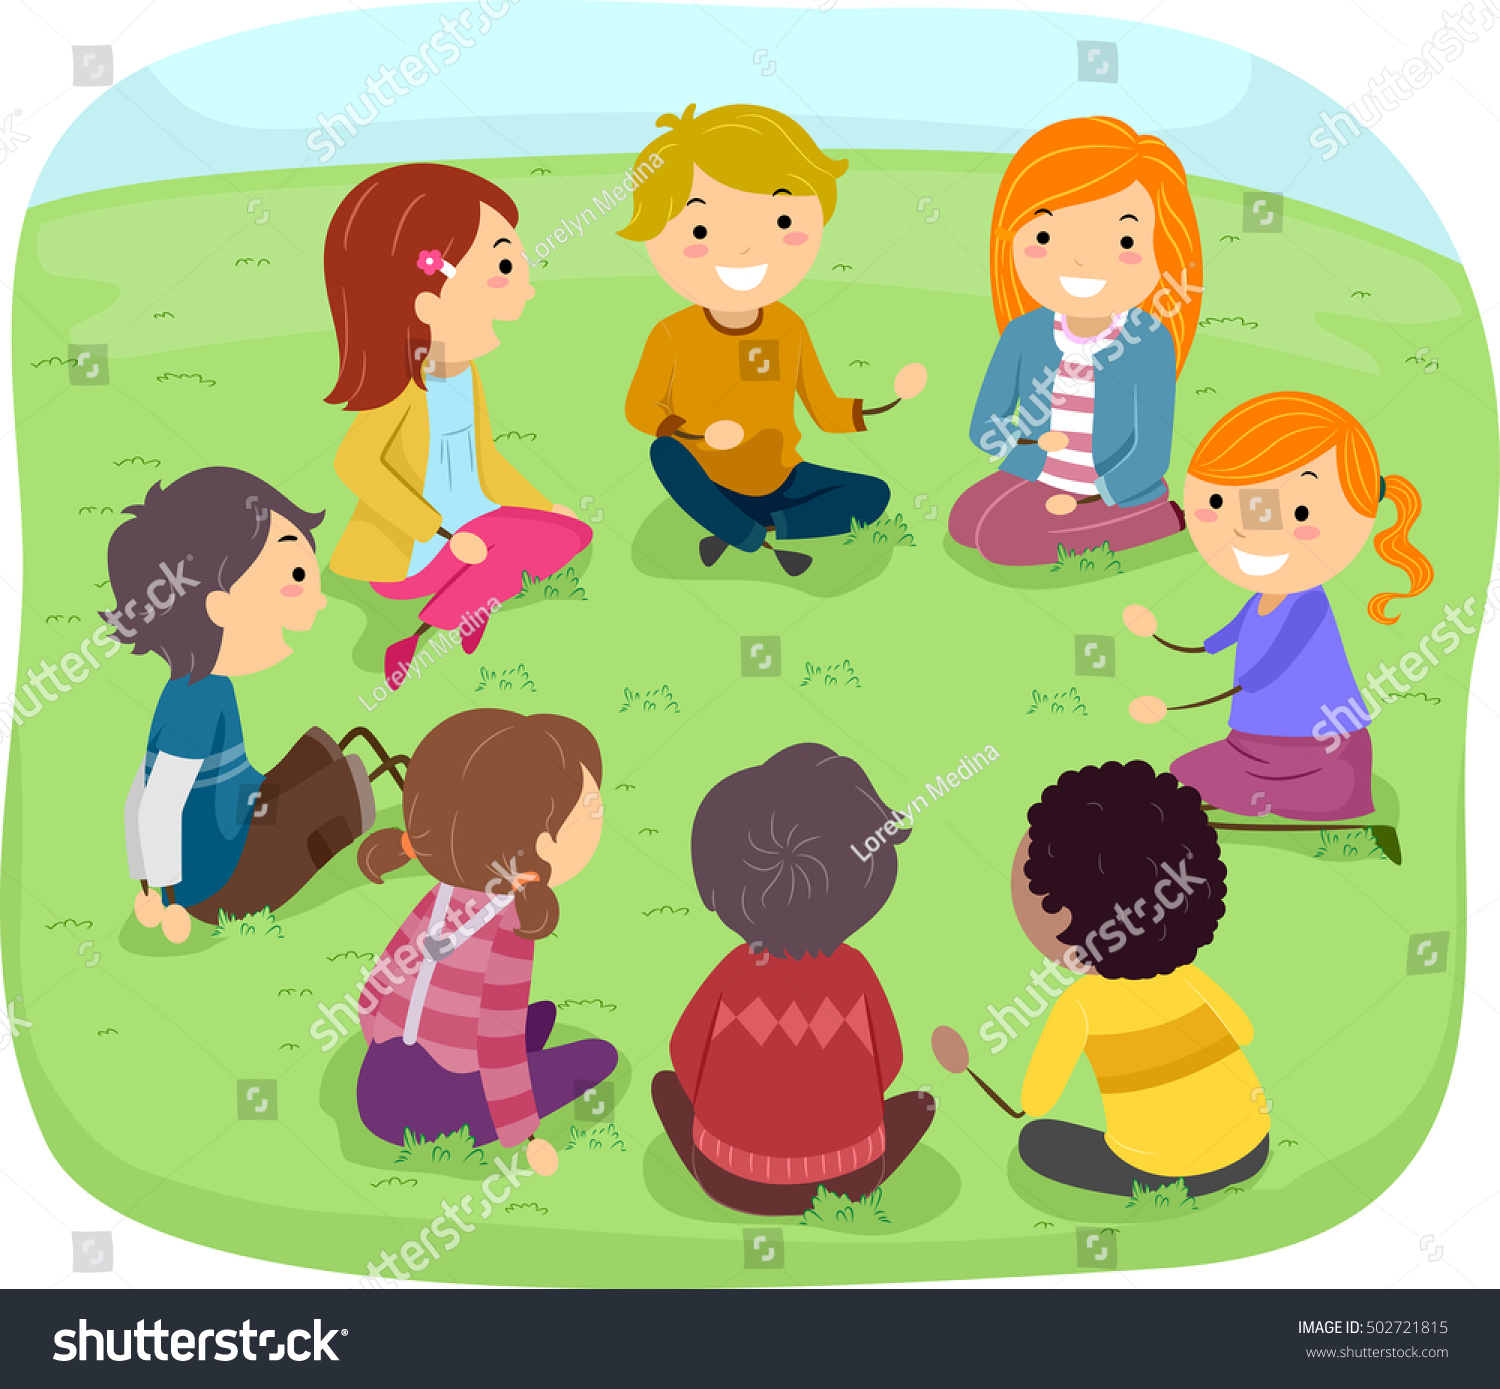 公園で子どもたちのグループが 話し合いながら丸く並んで座る様子を描いたステックマンイラスト のベクター画像素材 ロイヤリティフリー